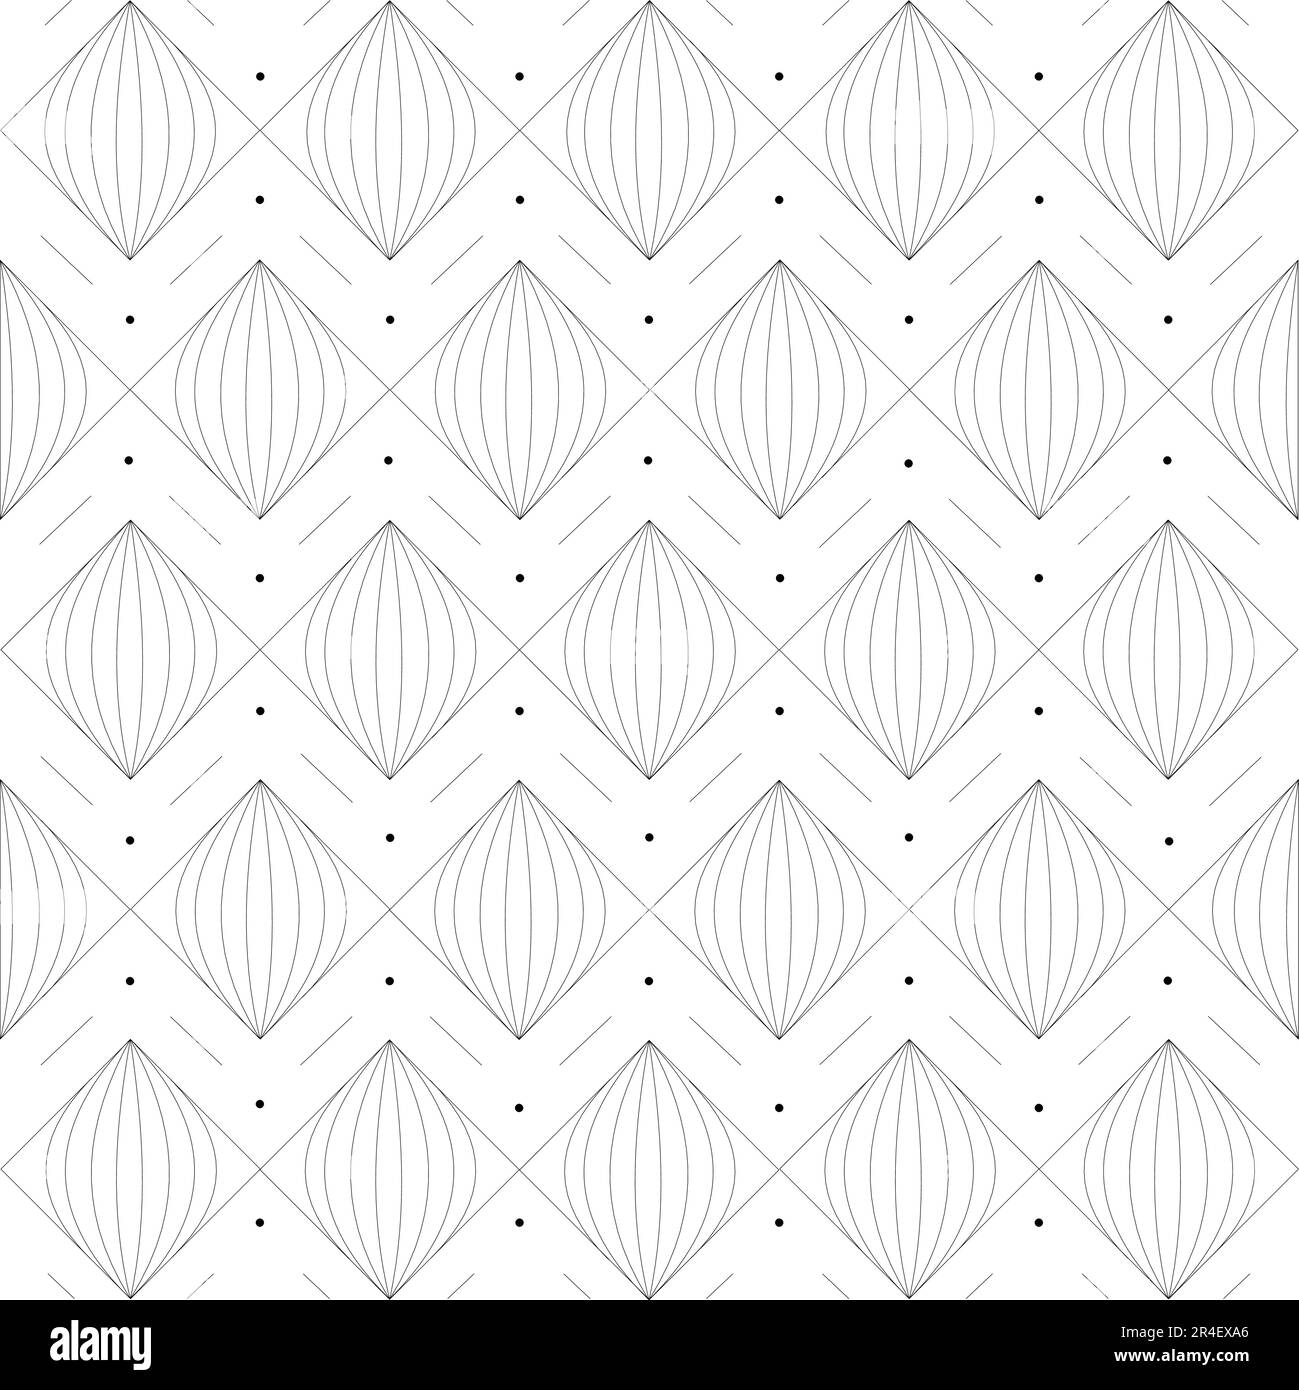 Geometrie modernes Wiederholungsmuster mit Texturen. Vektordarstellung von Dreieck-, Quadrat- und Zwiebelmotiven. Kann für Fliesen, Textilien und Tapeten verwendet werden Stock Vektor